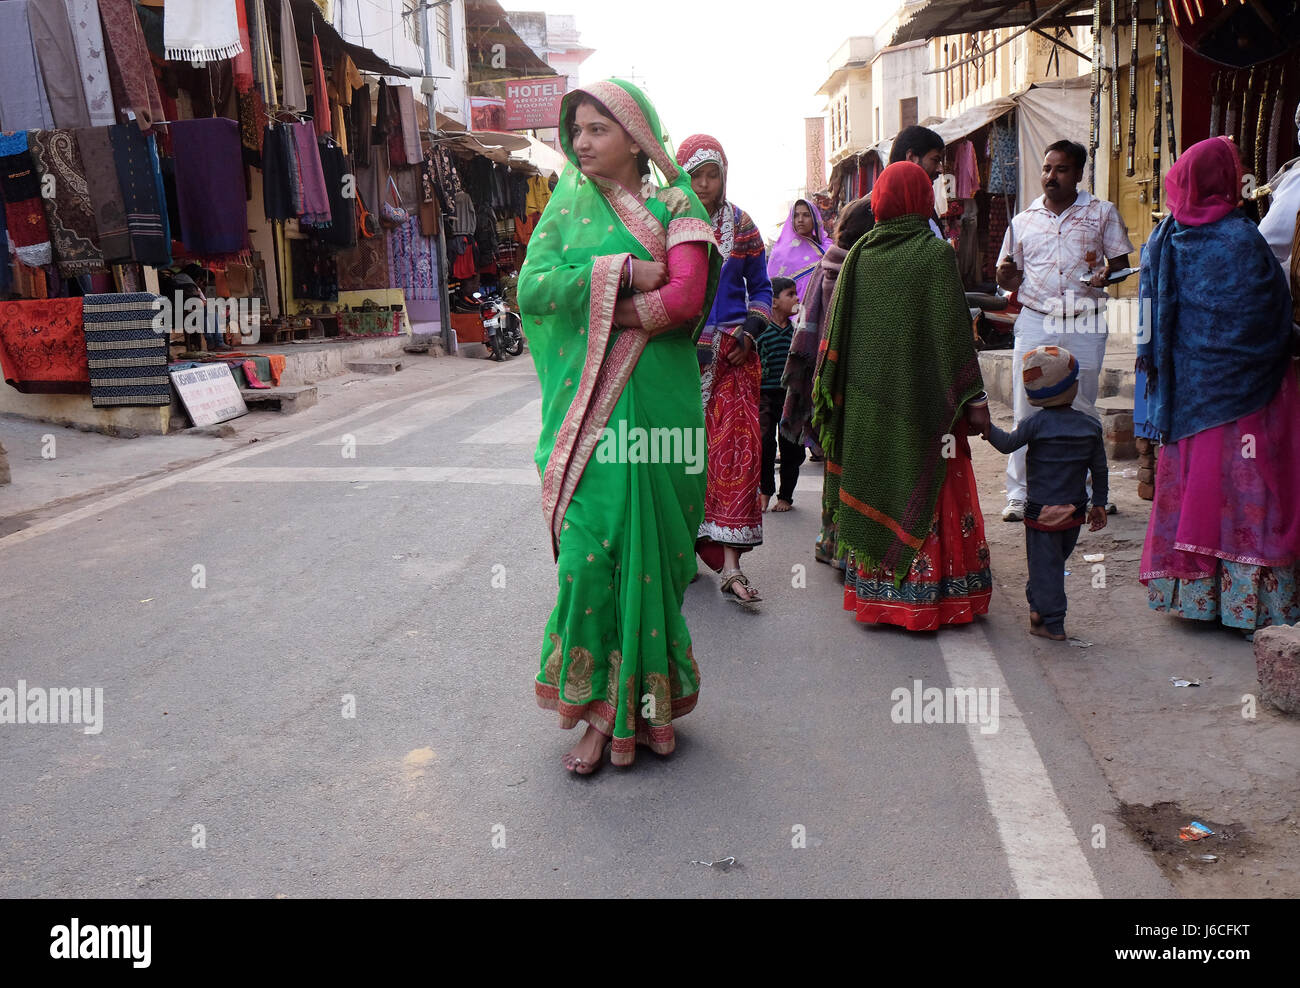 Le donne indiane con il tradizionale sari colorati sulla strada di Pushkar, Rajasthan, India il 17 febbraio 2016. Foto Stock